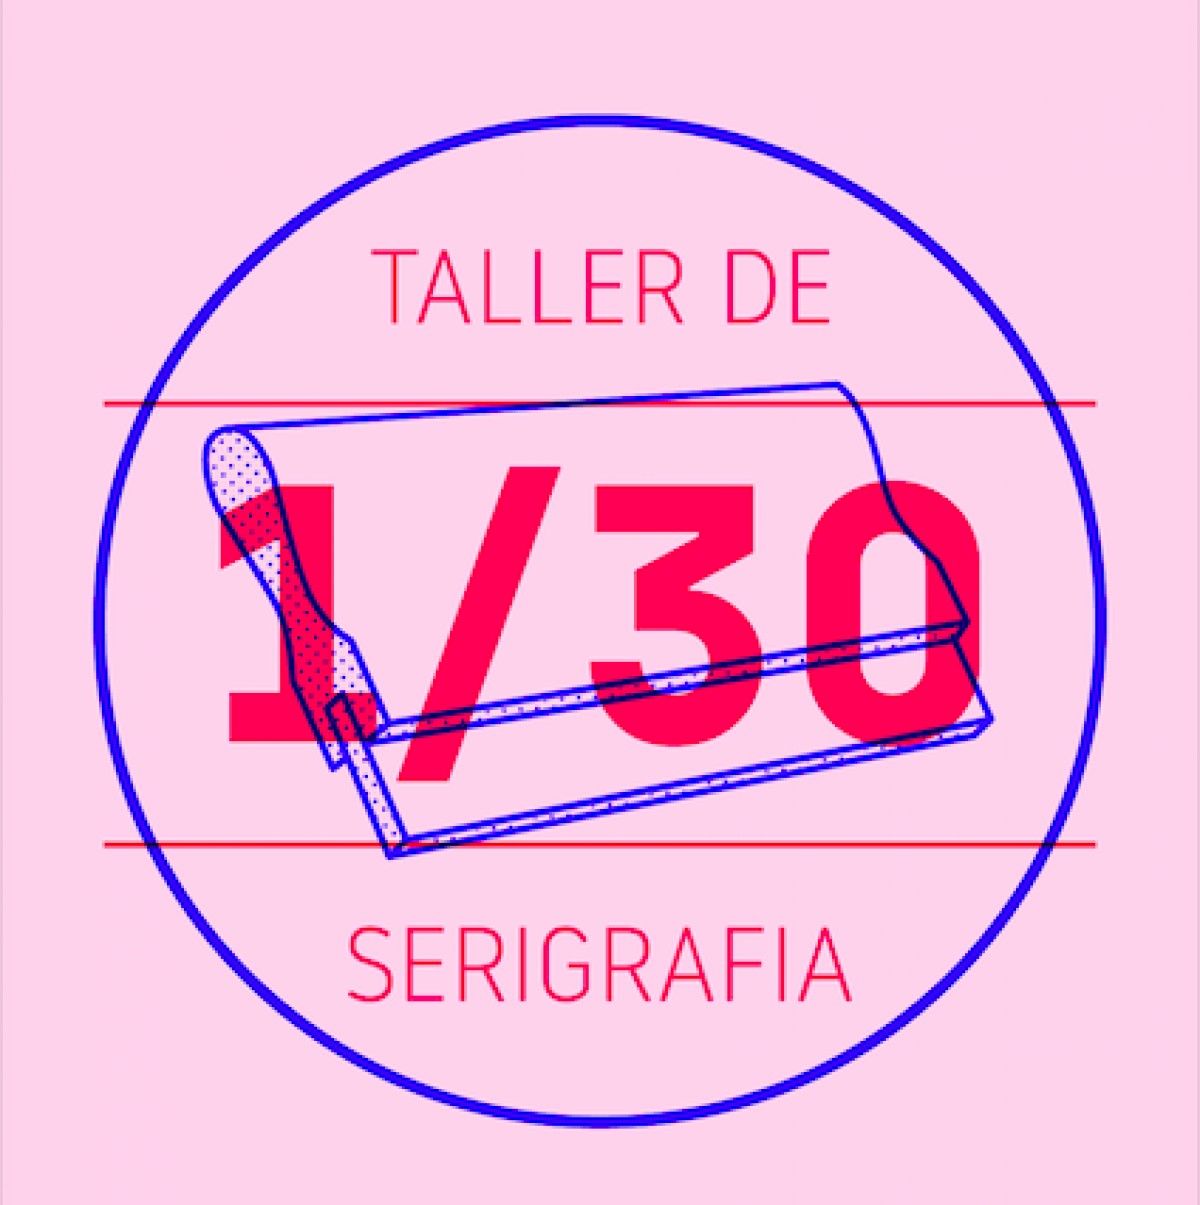 El Taller 1/30 és una proposta de l'estudi gràfic Vis a Vis.